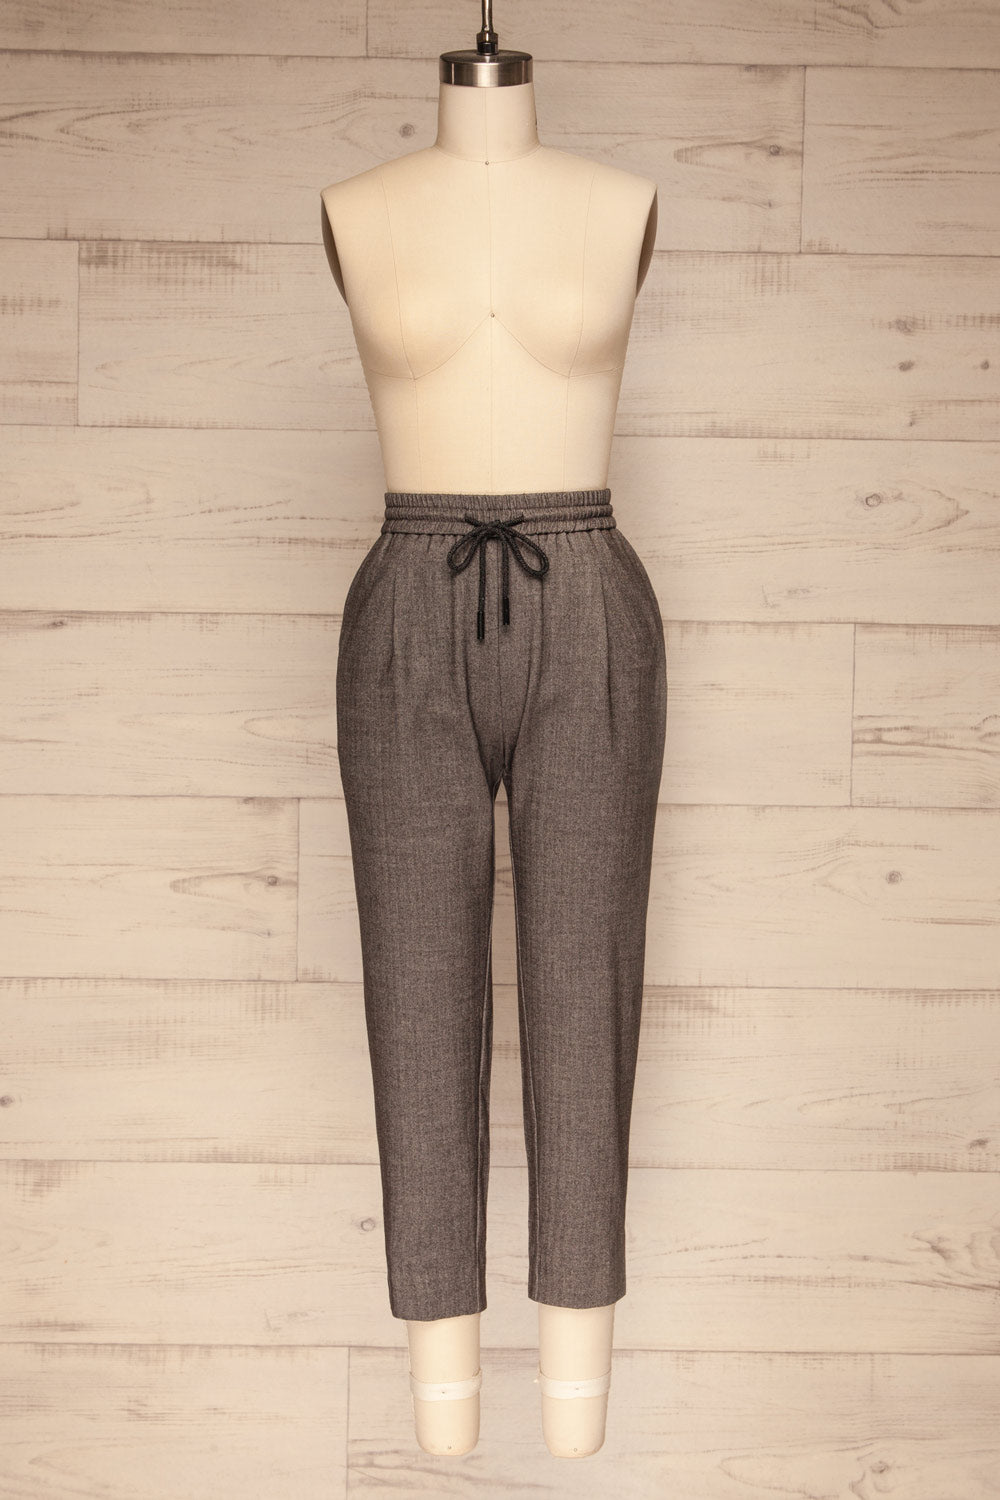 Kerames Cropped Grey Drawstring Pants | La petite garçonne front view